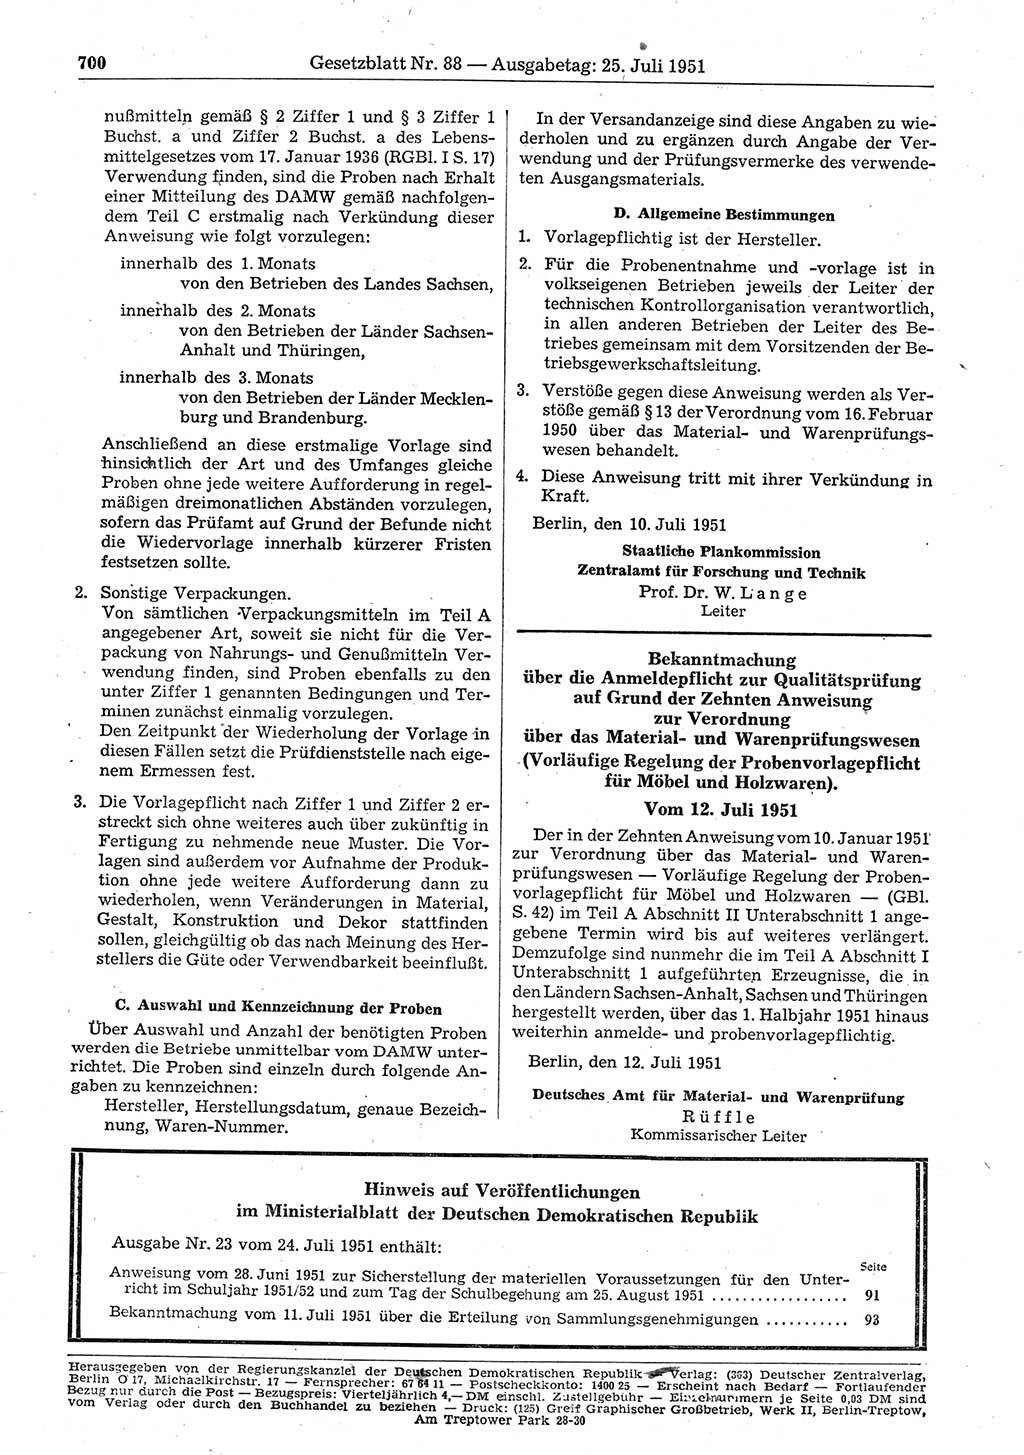 Gesetzblatt (GBl.) der Deutschen Demokratischen Republik (DDR) 1951, Seite 700 (GBl. DDR 1951, S. 700)